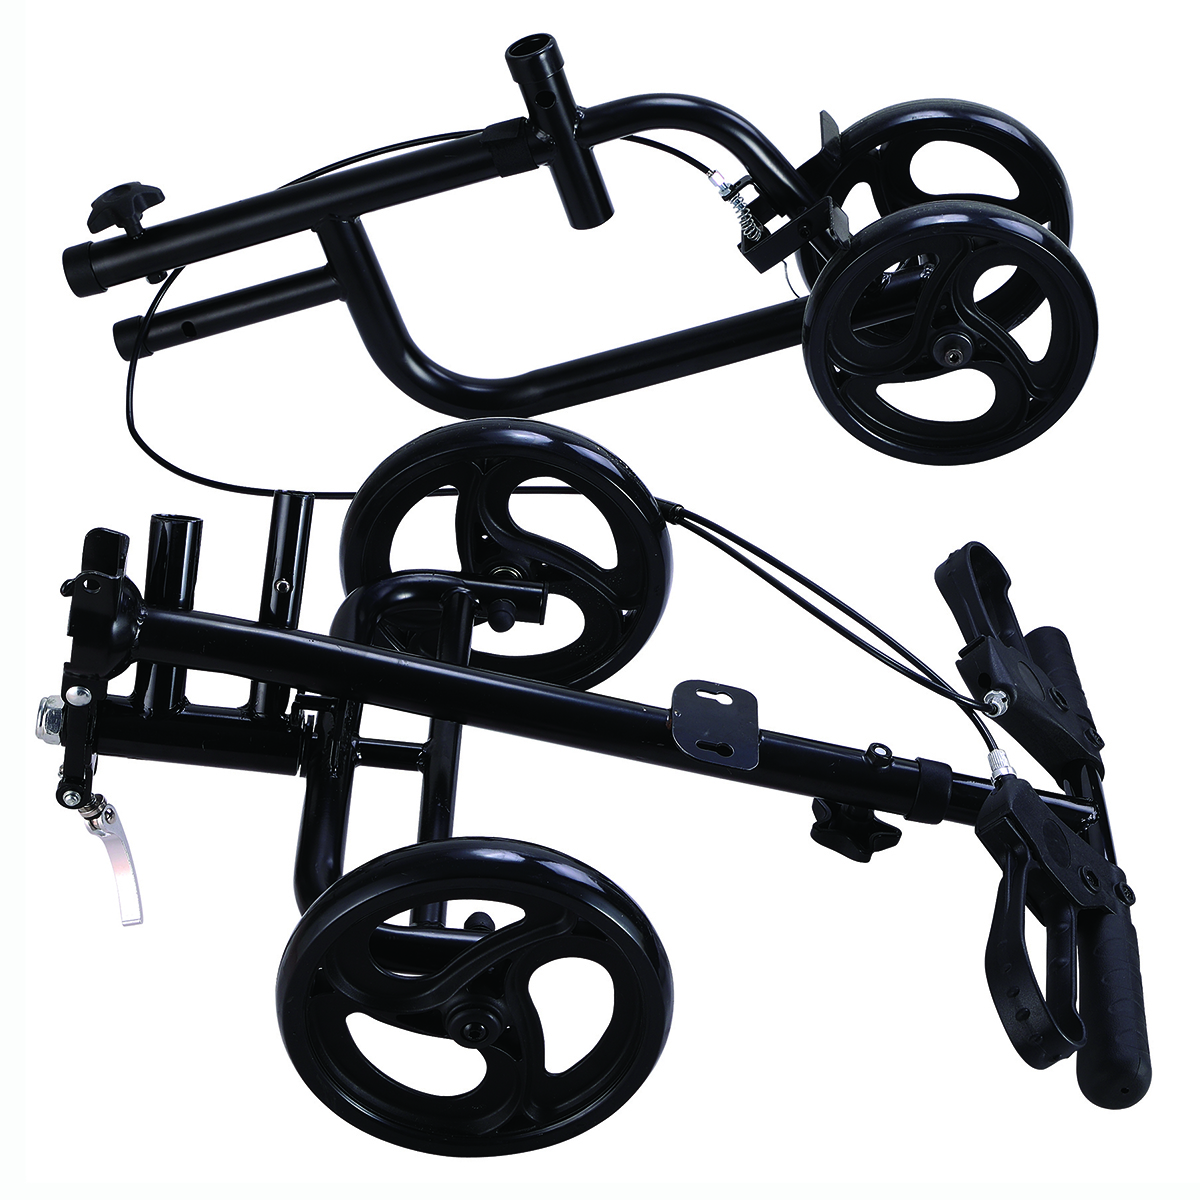 Mobility-Knee-Walker-Scooter-Roller-Crutch-Leg-Steerable-Foldable-Design-Adjustable-Height-Adjustabl-1940054-8